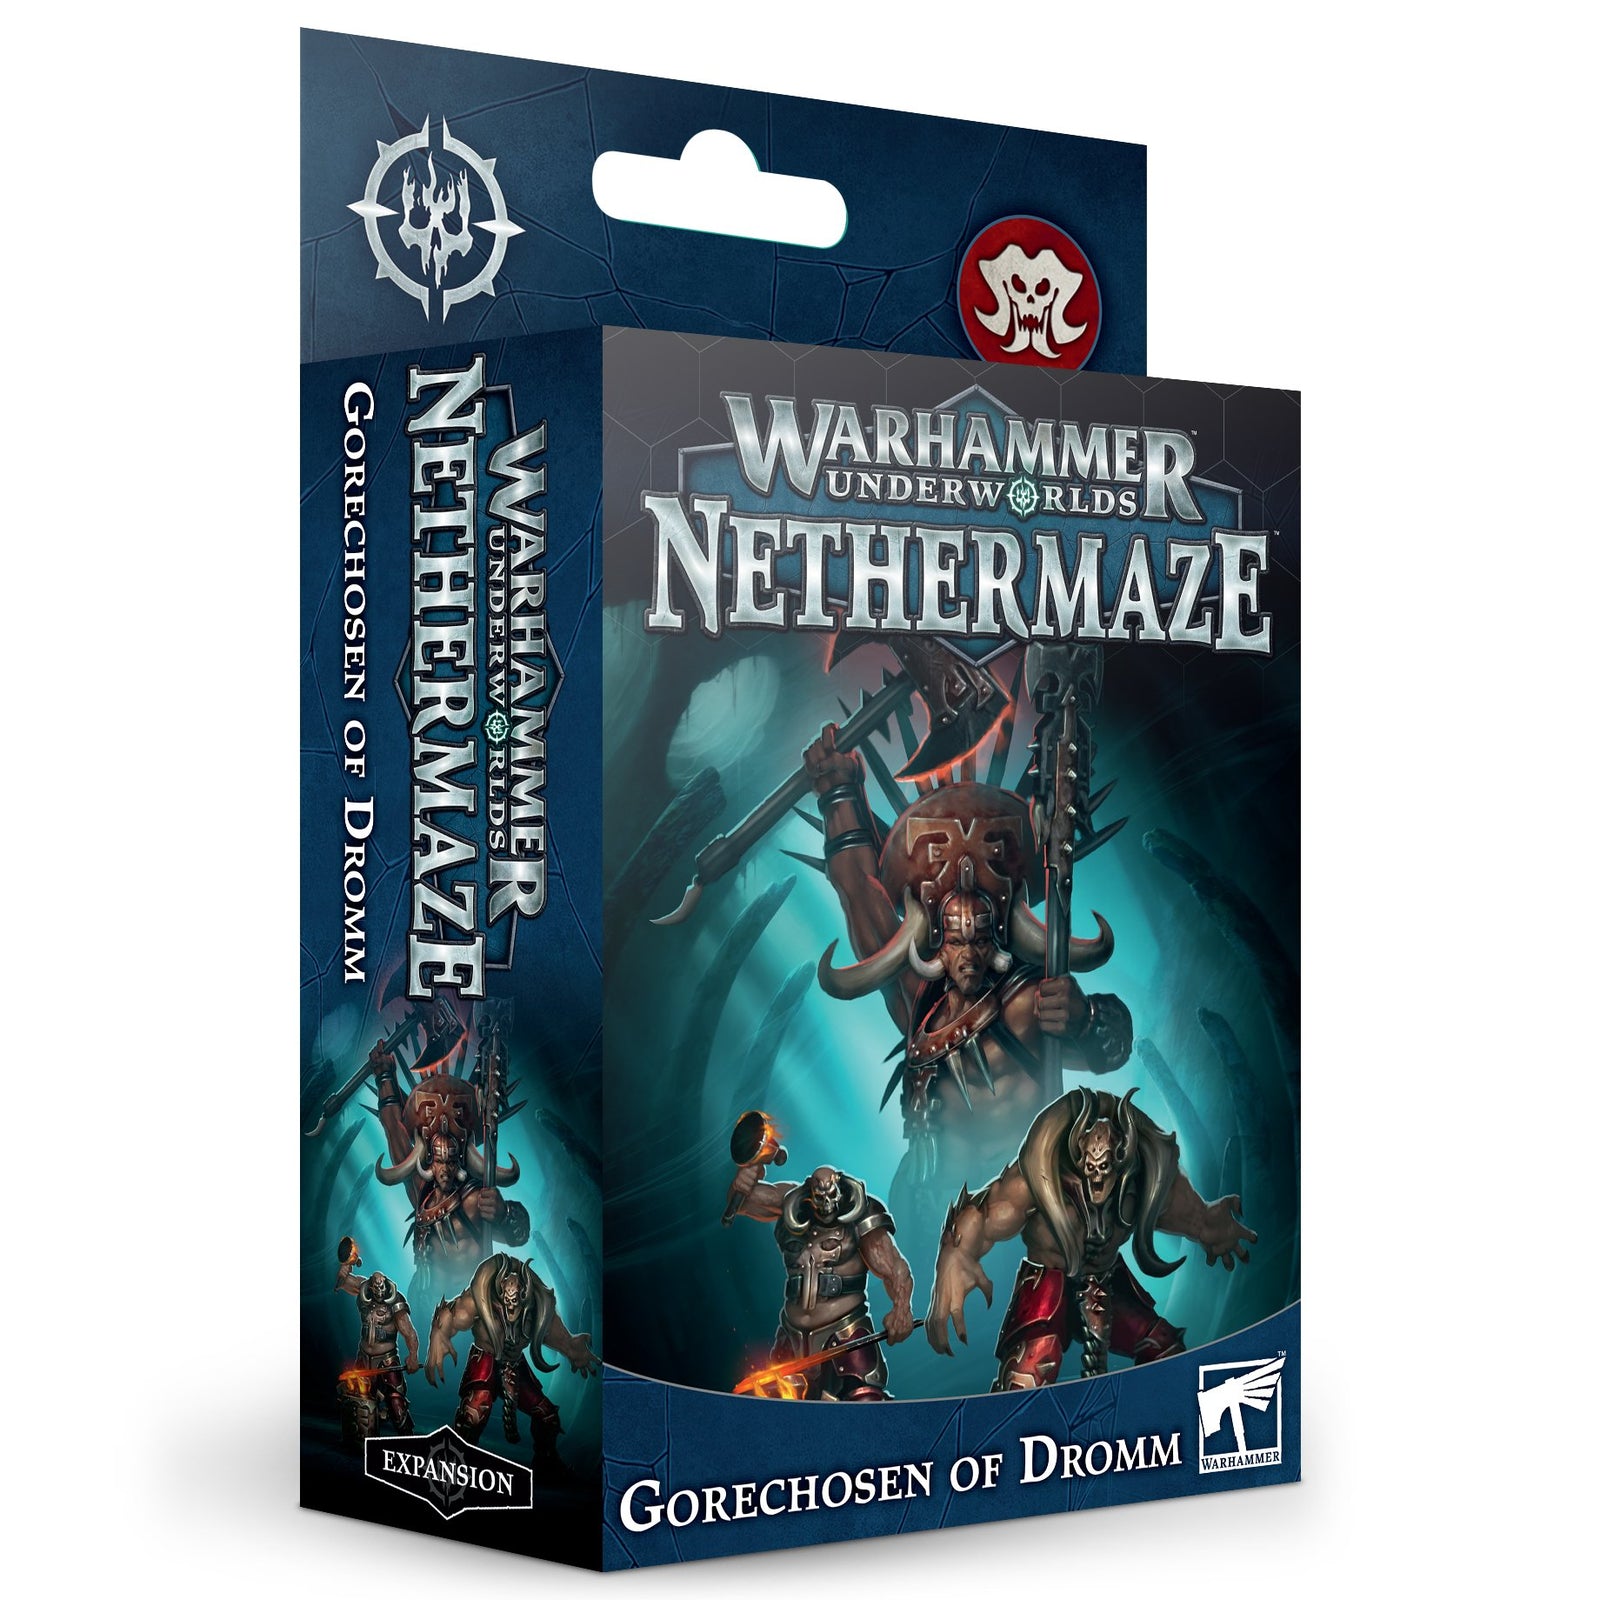 Warhammer Underwolrds Nethermaze - Gorechosen of Dromm